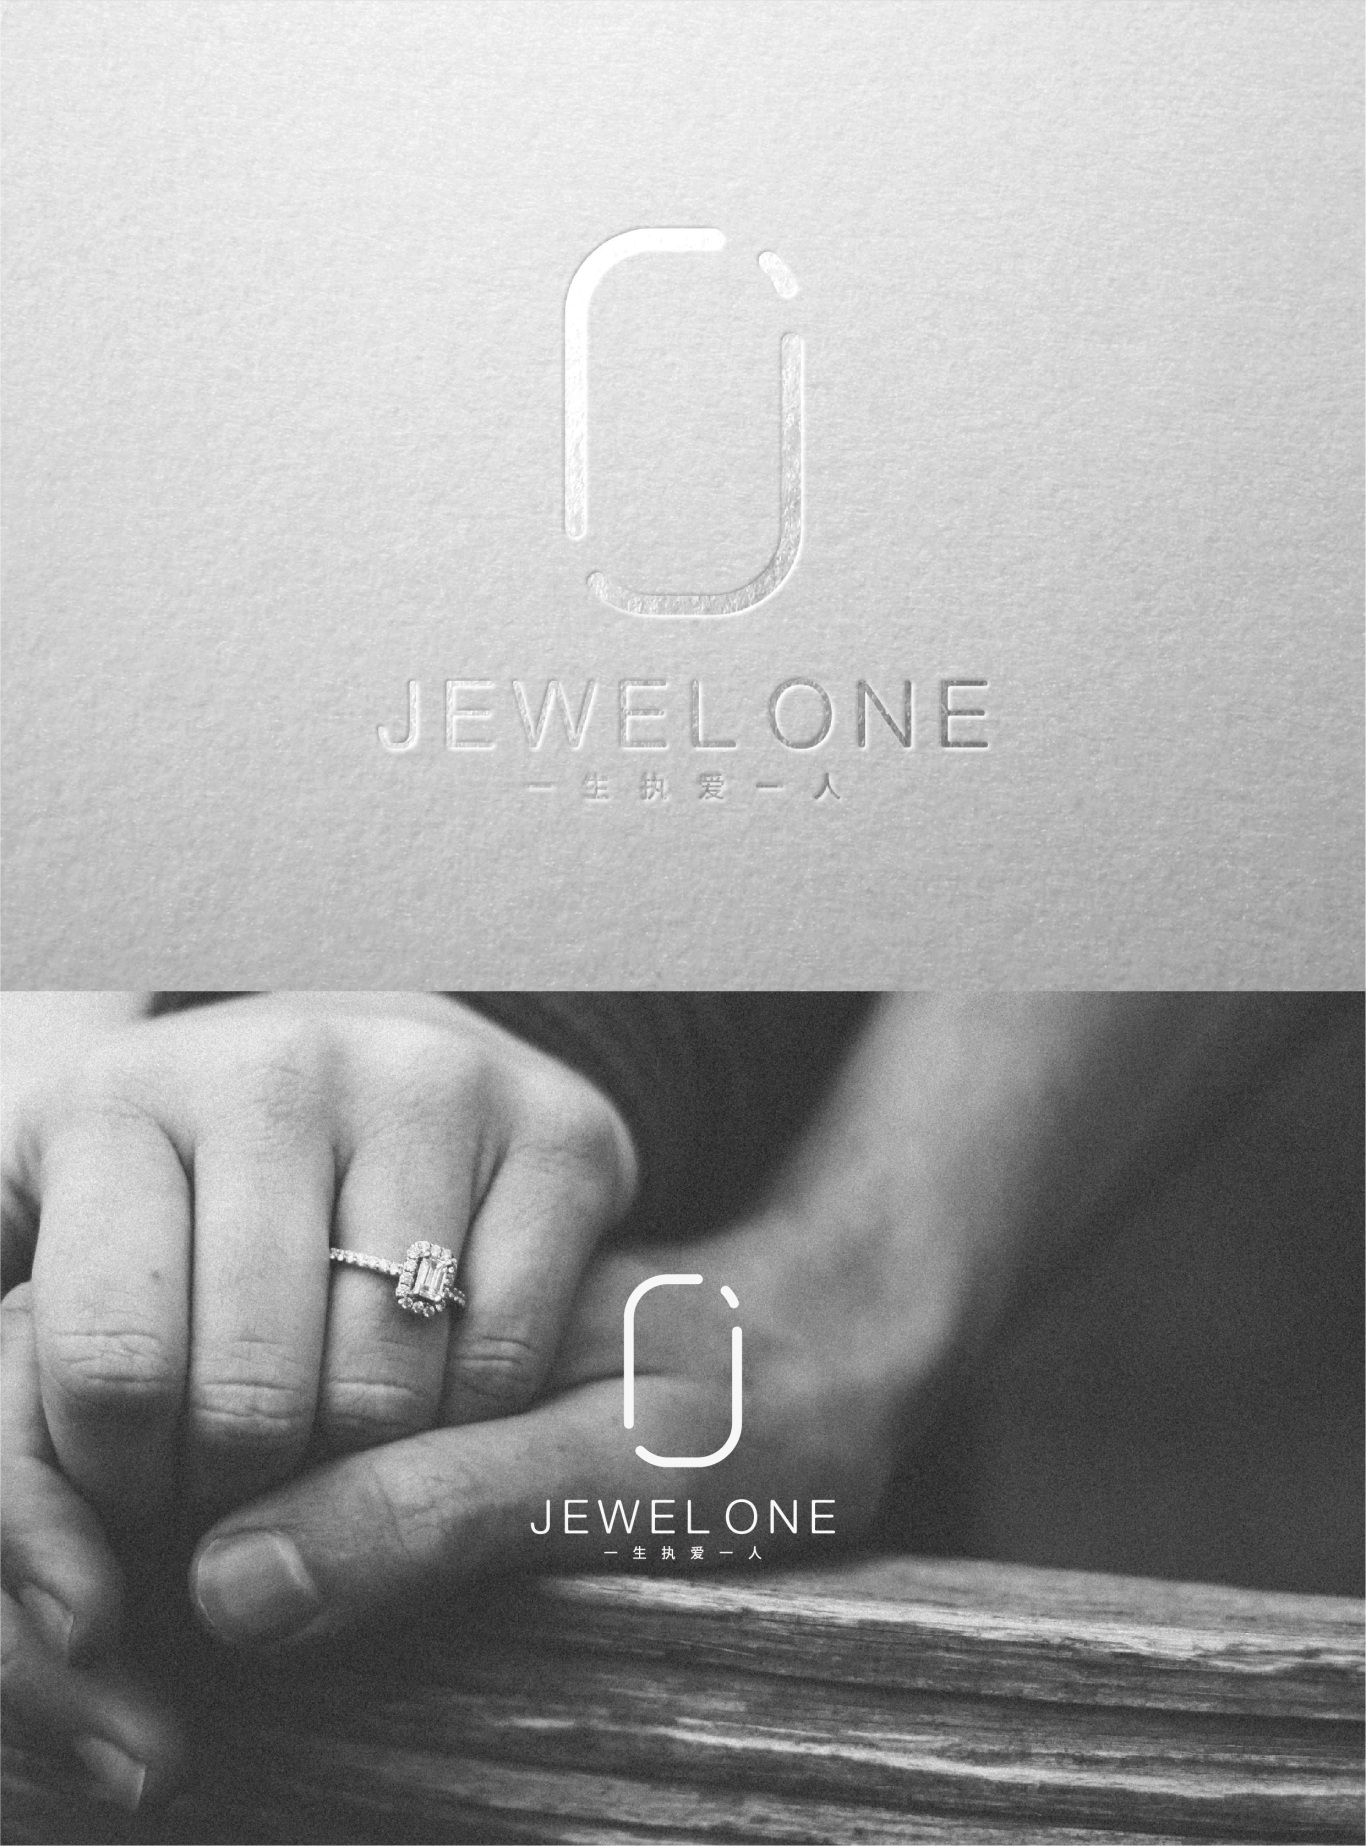 Jewel one图11